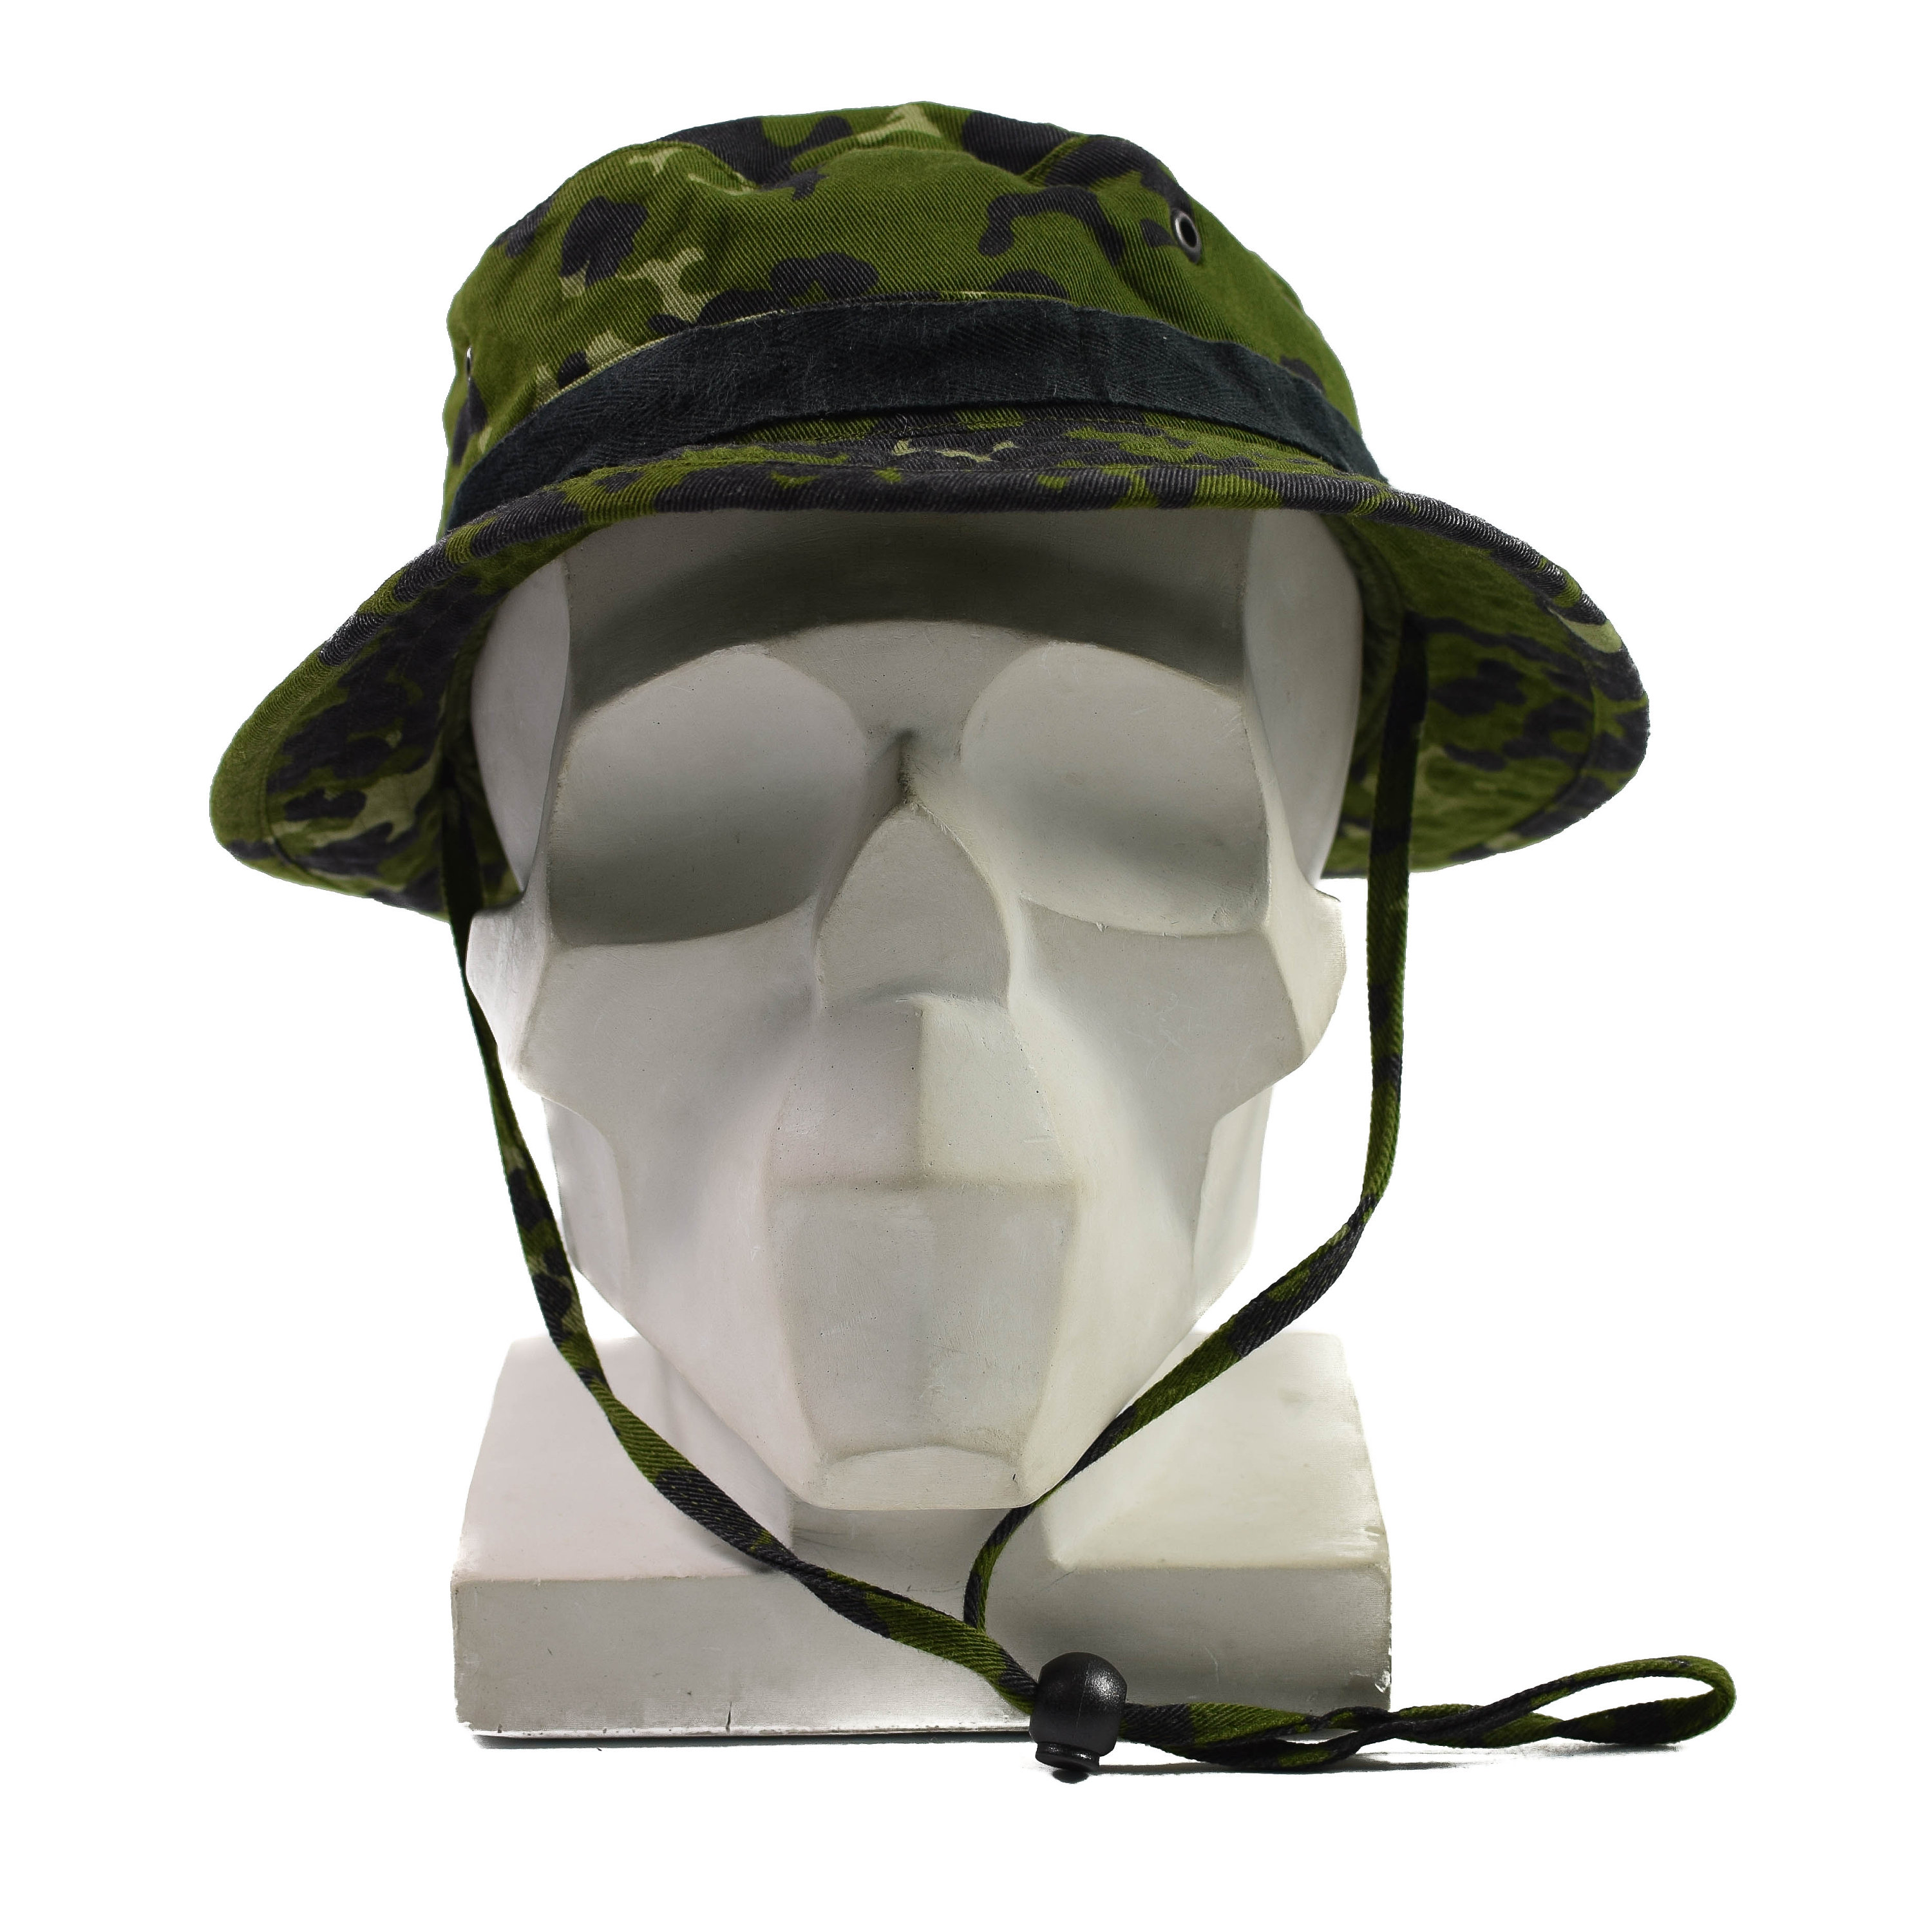 DANISH ARMY BOONIE BUSH HAT in M84 FLECKTARN CAMO GENUINE ISSUE 